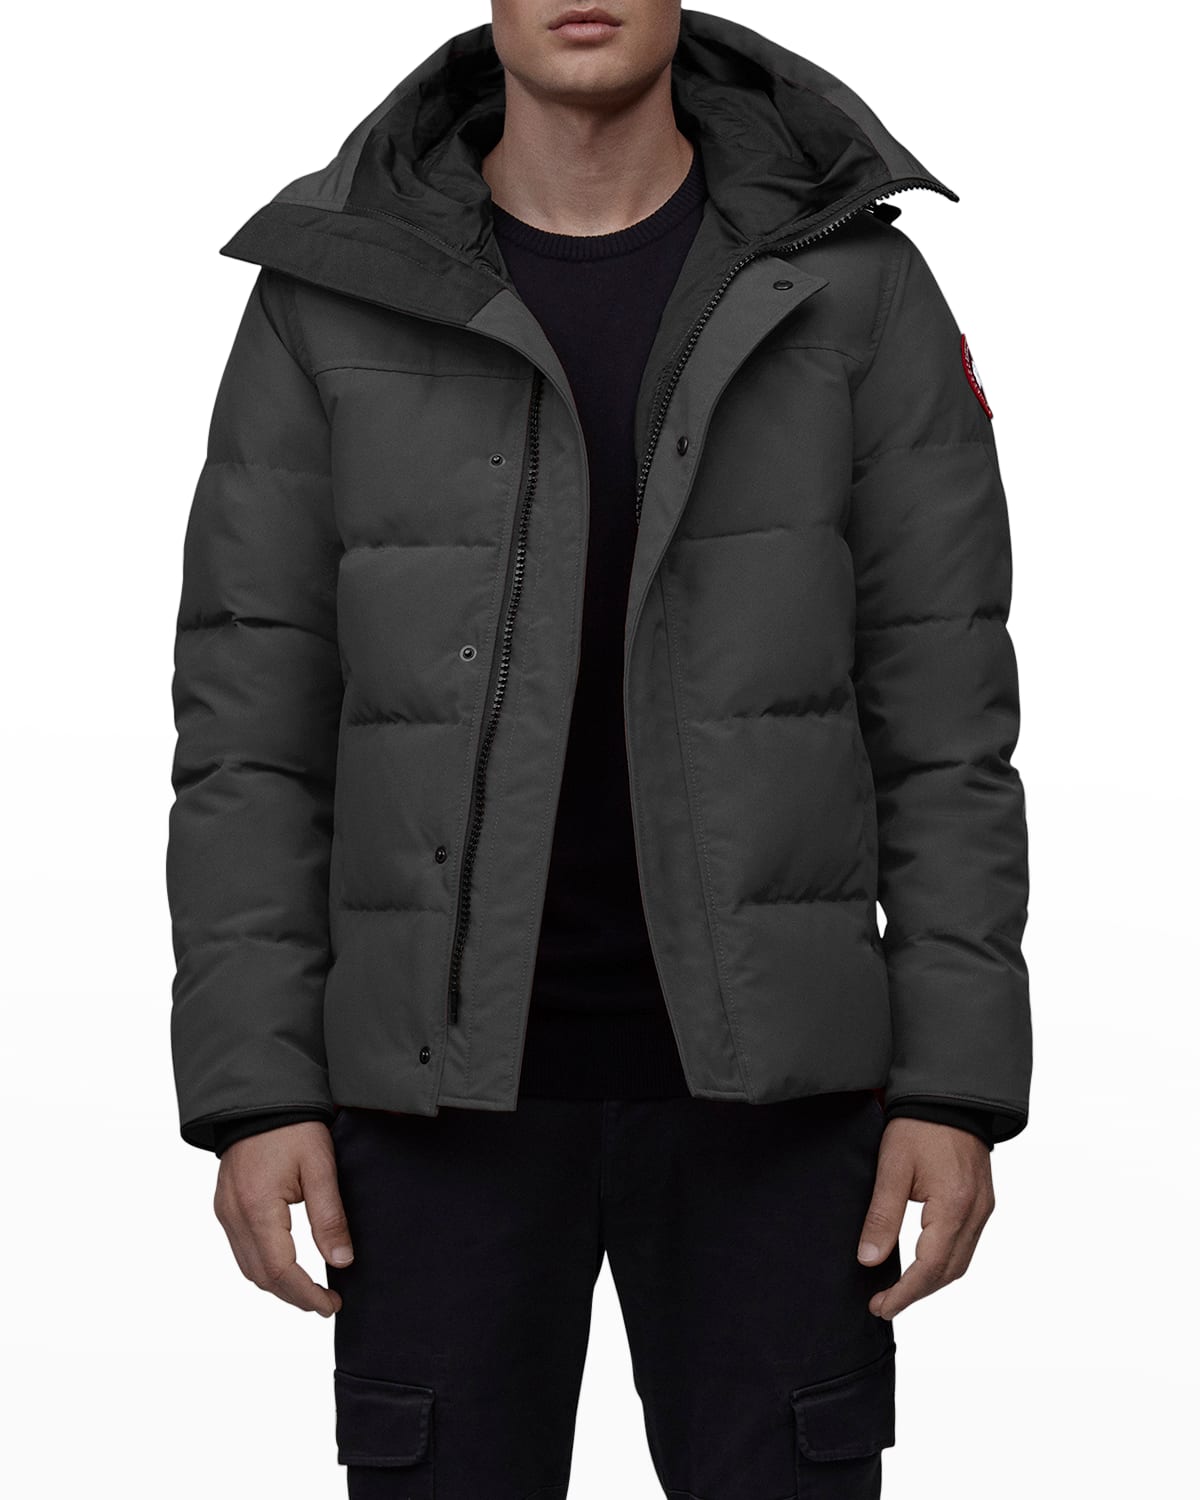 Canada Goose Macmillan Hooded Parka Coat | Smart Closet